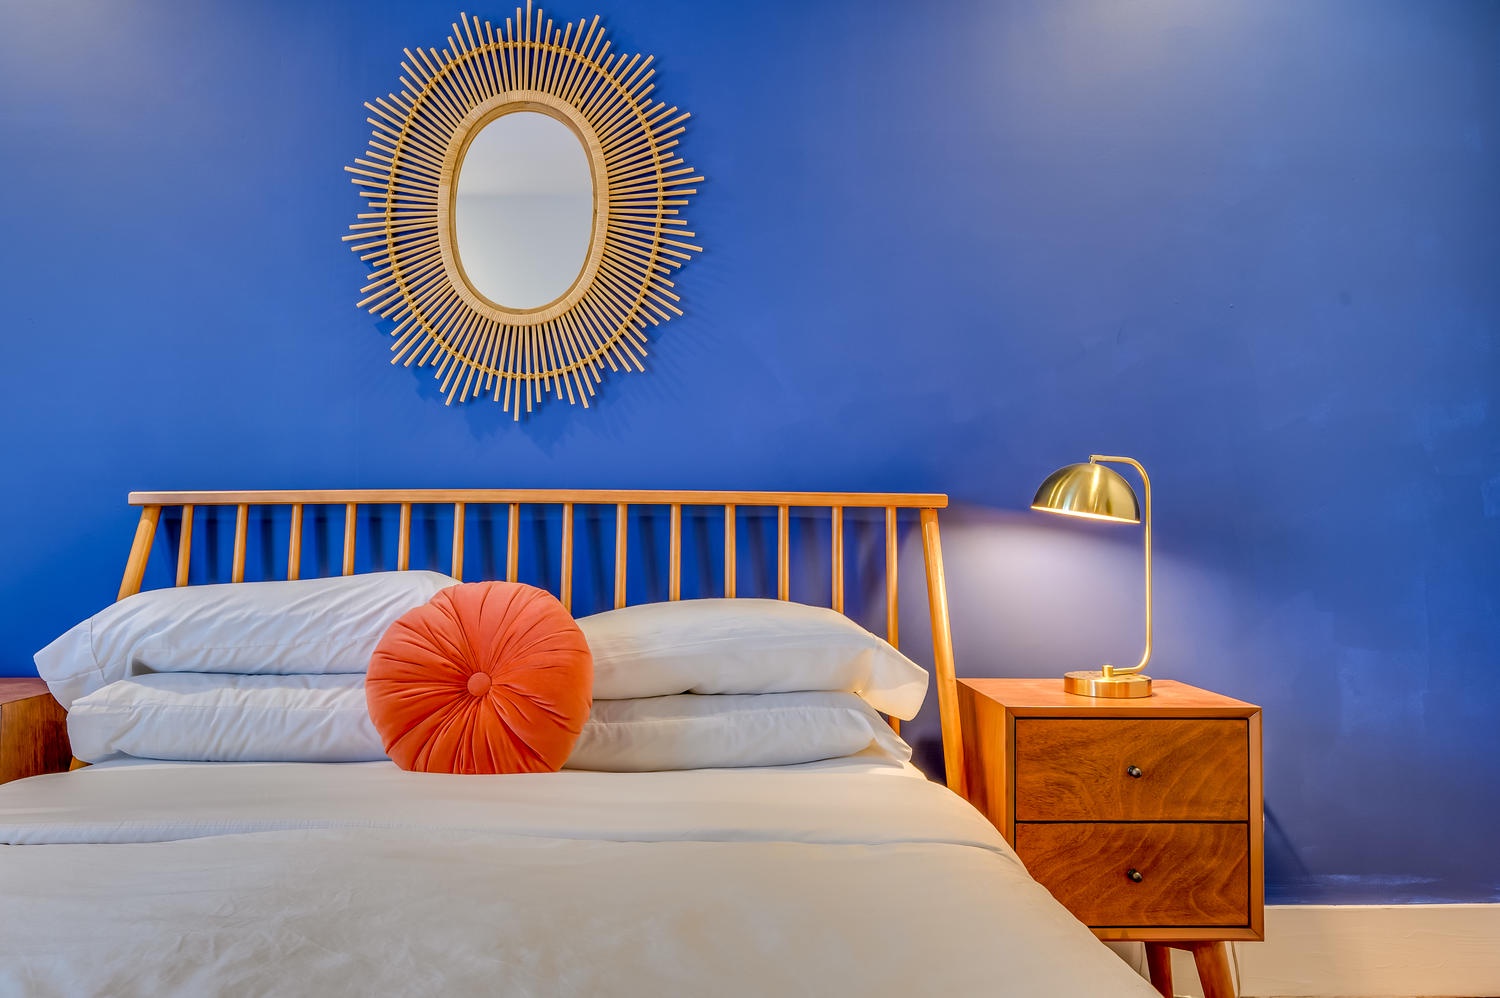 Suite 203 – The 2nd Floor Blue Mid-Century Suite offers Casper King and Queen Beds, Smart TV, and En Suite Bathroom